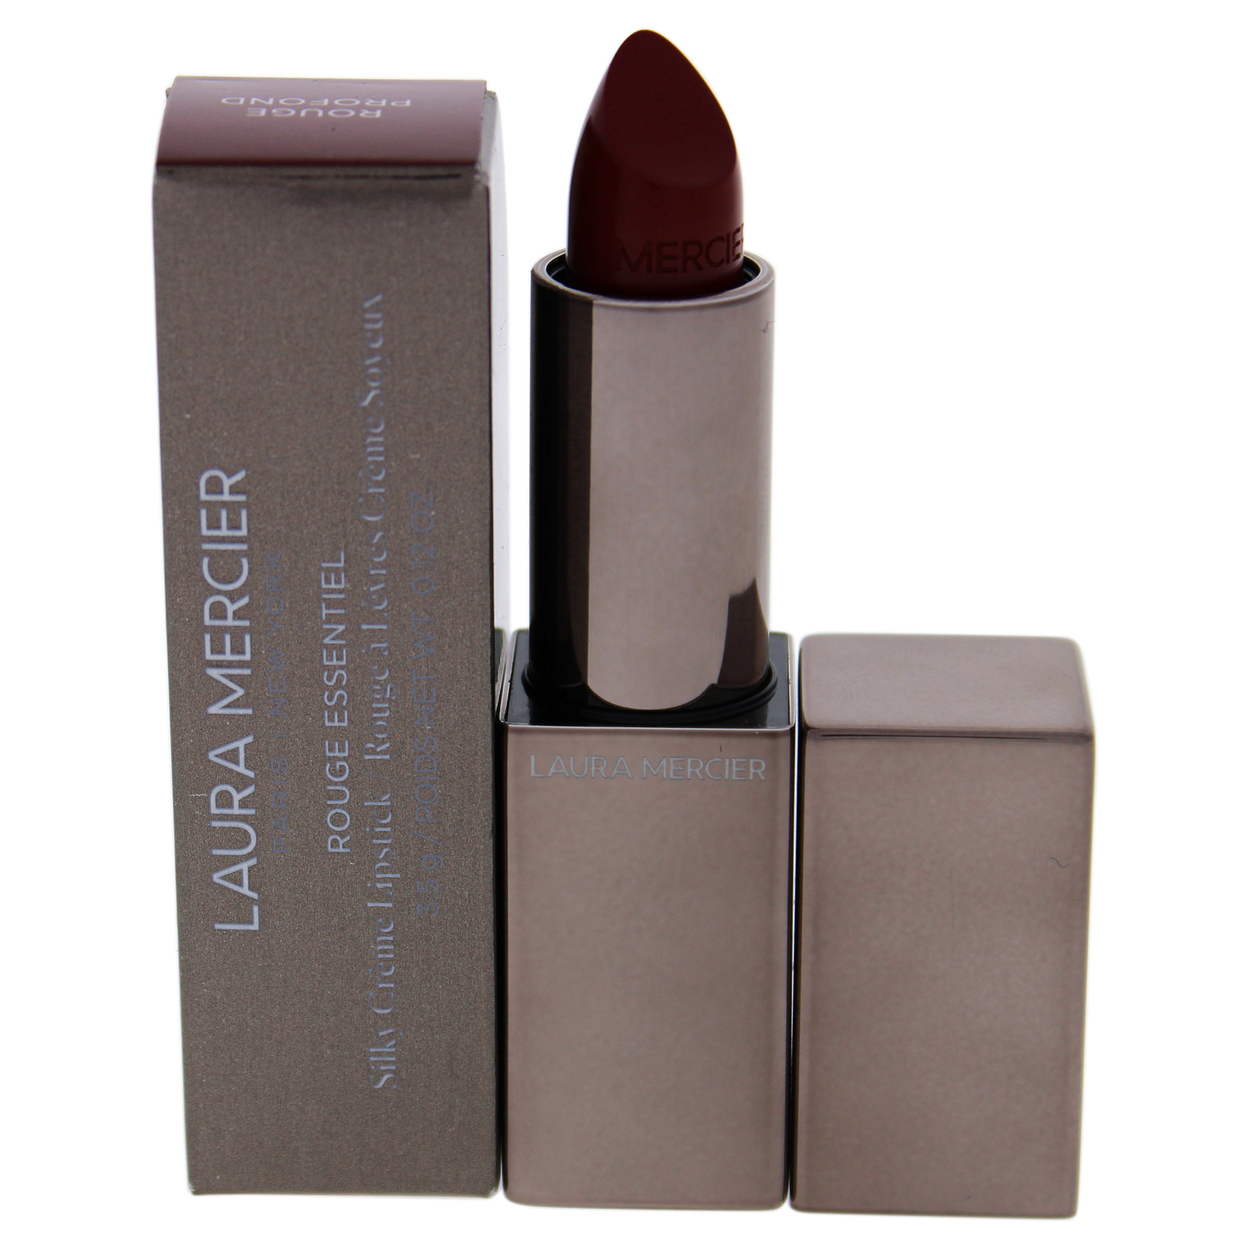 Laura Mercier Rouge Essentiel Silky Creme Lipstick - 485 Rouge Profond Lipstick 0.12 oz